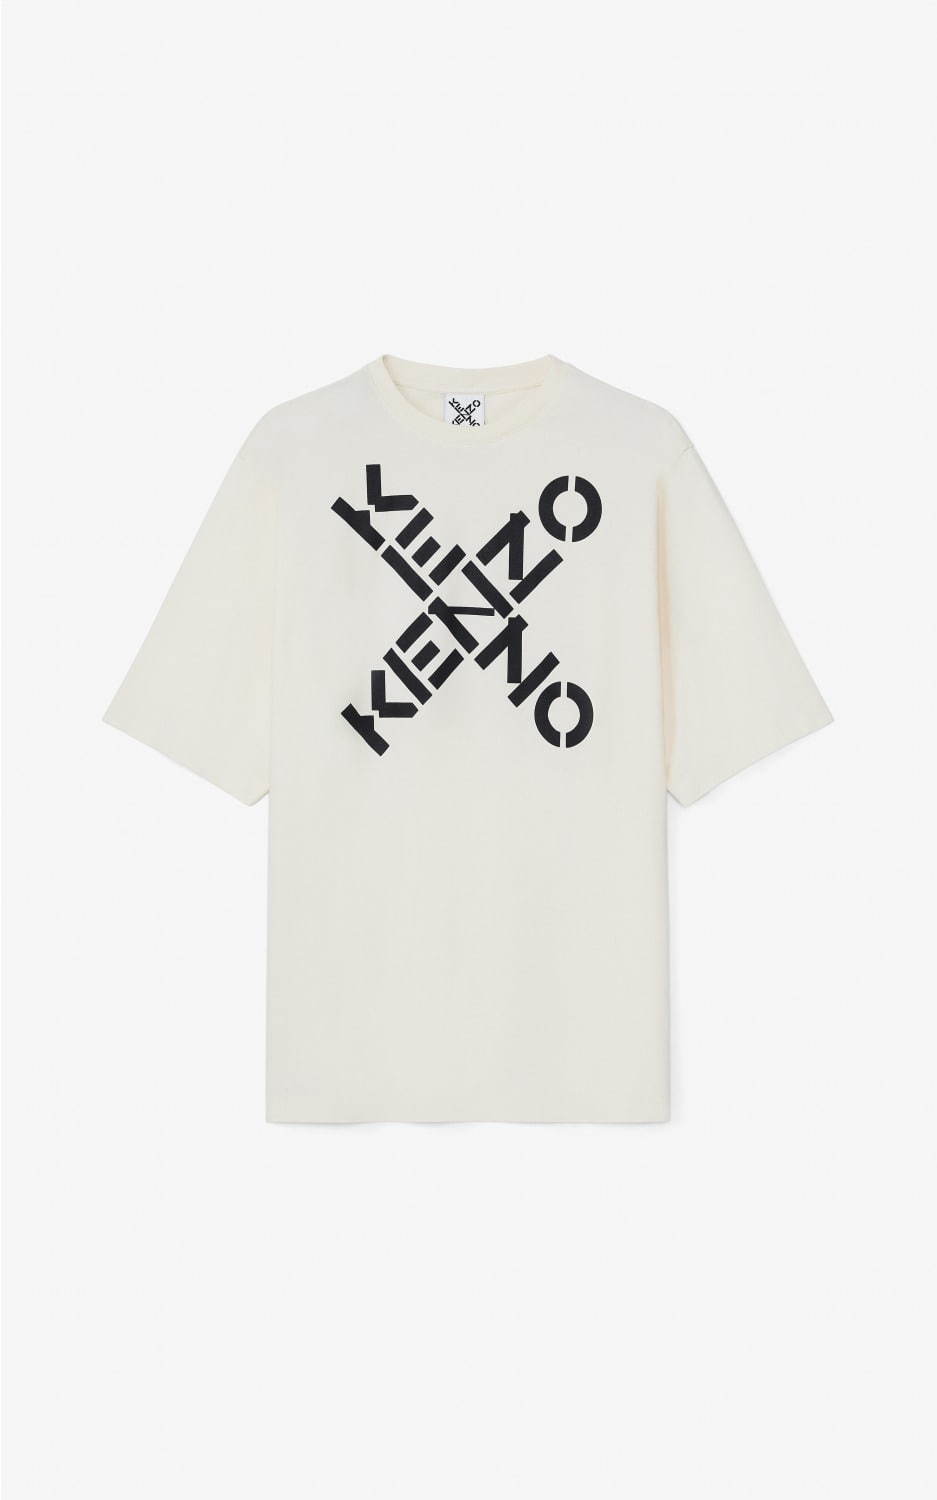 ケンゾーの新ライン ケンゾー スポーツ ロゴを配したtシャツやフーディー モノグラム柄ニットなど ファッションプレス